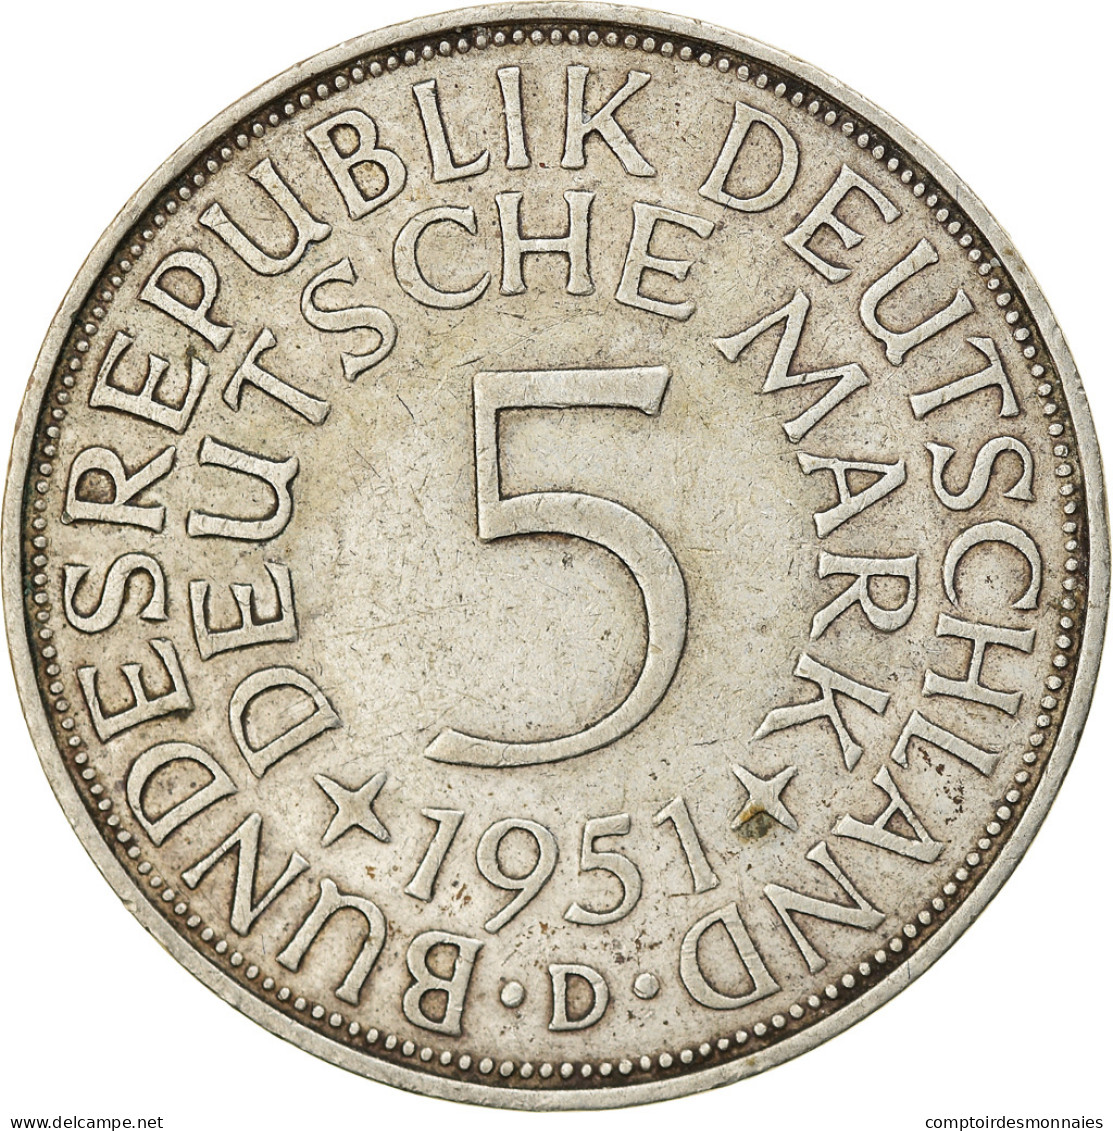 Monnaie, République Fédérale Allemande, 5 Mark, 1951, Munich, TTB, Argent - 5 Marchi